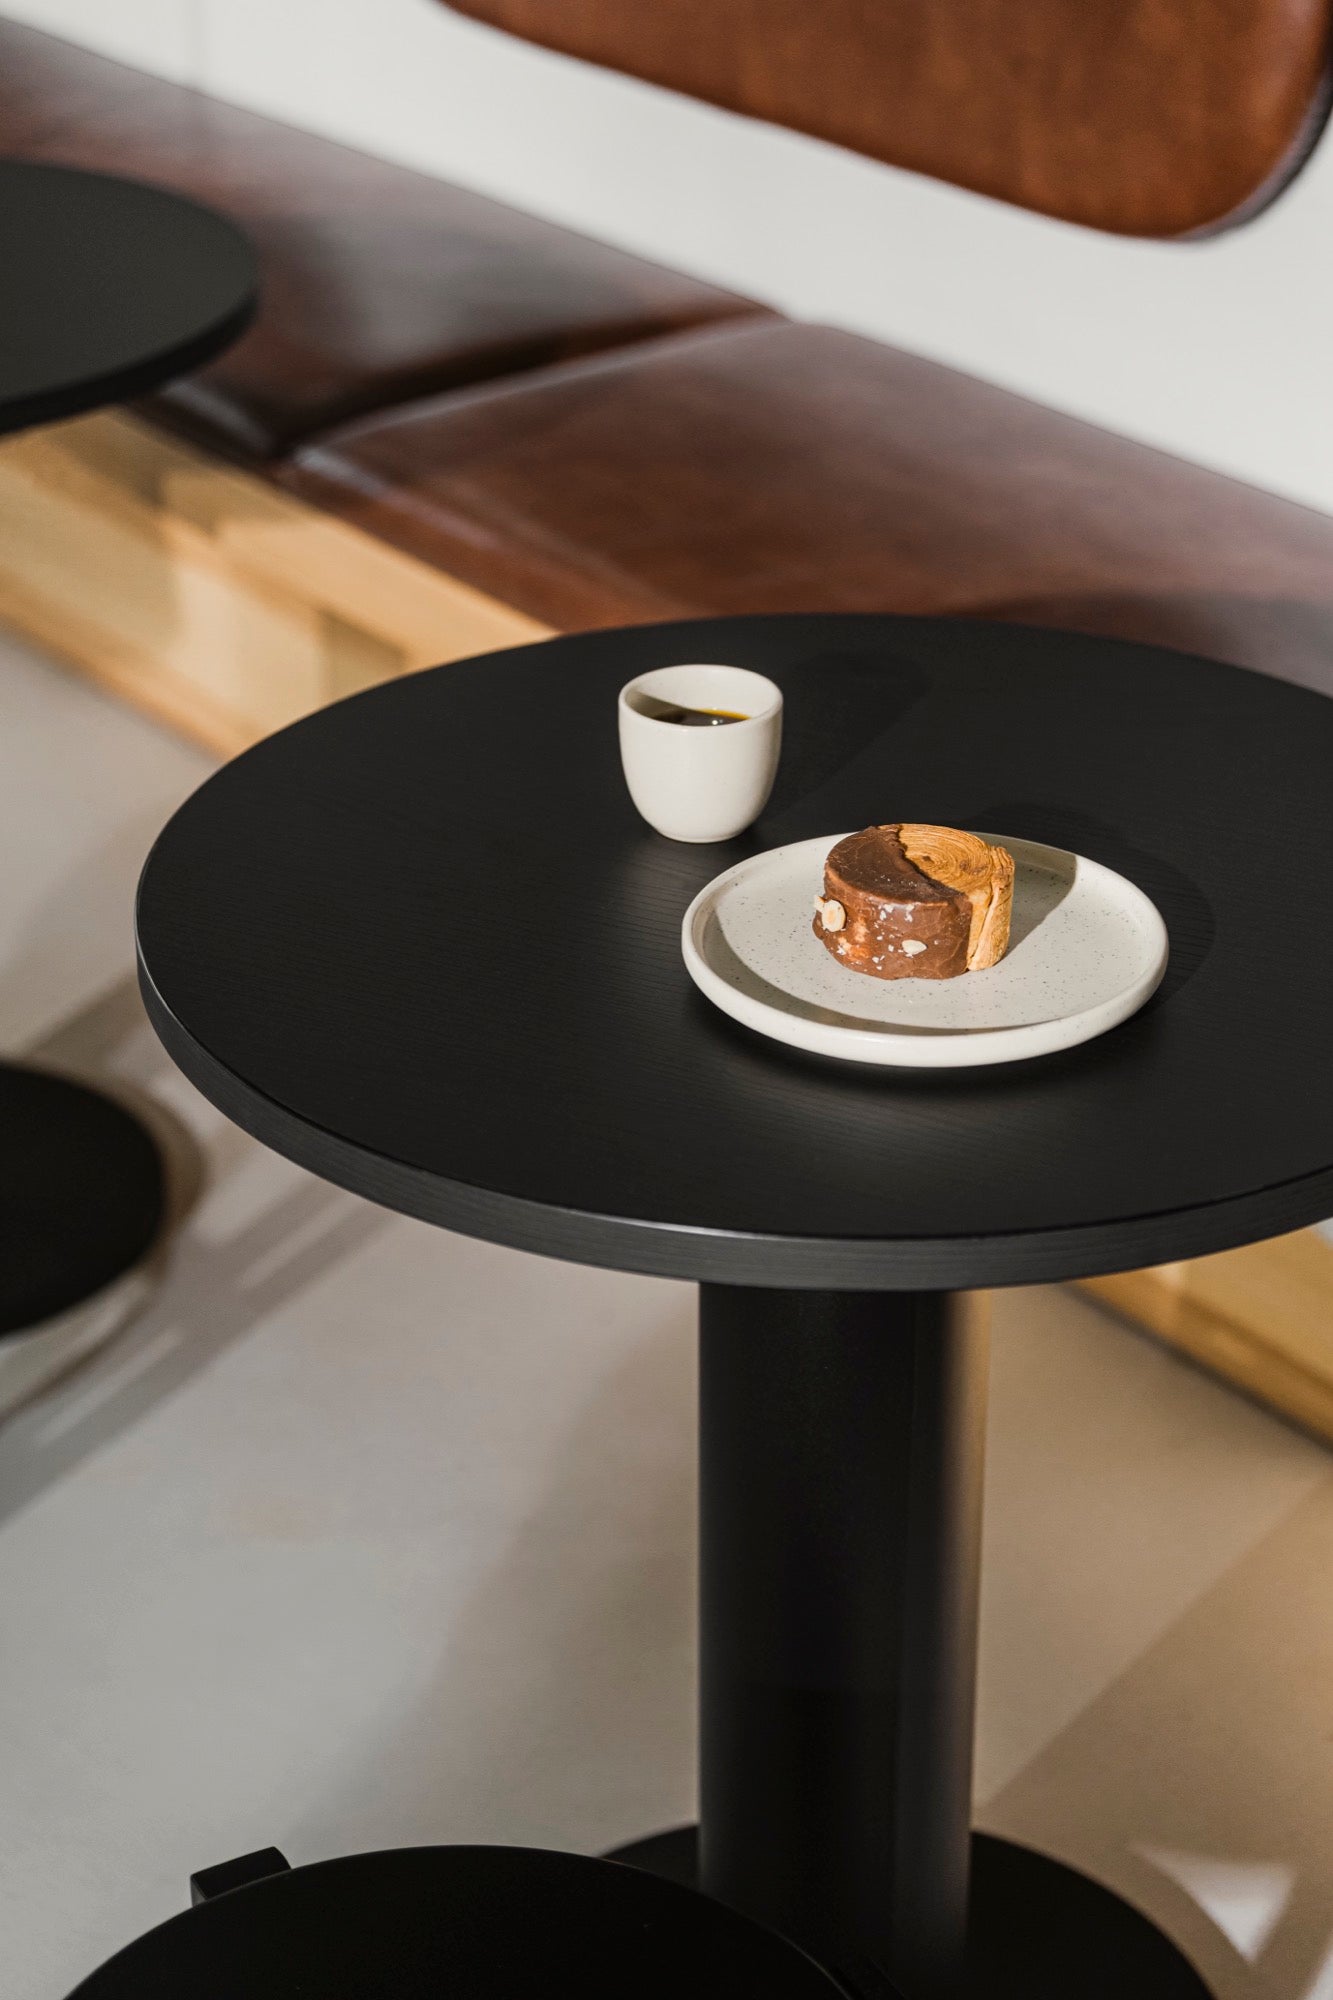 Table Sool Café - 65 cm